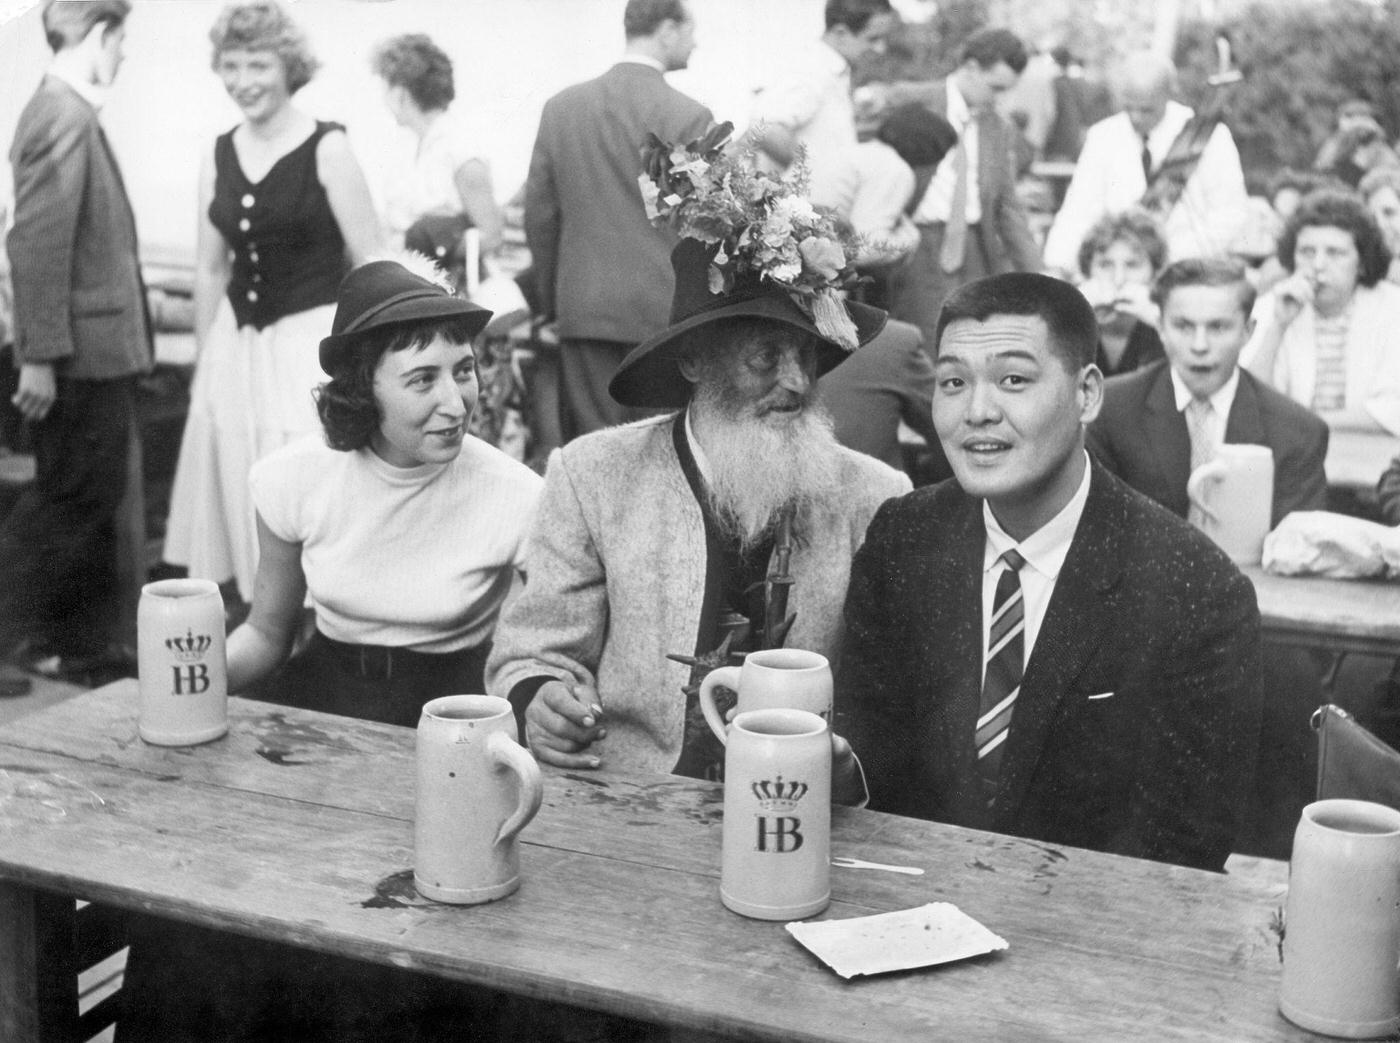 Japanese tourists enjoying Oktoberfest with Bavarians, 1960.